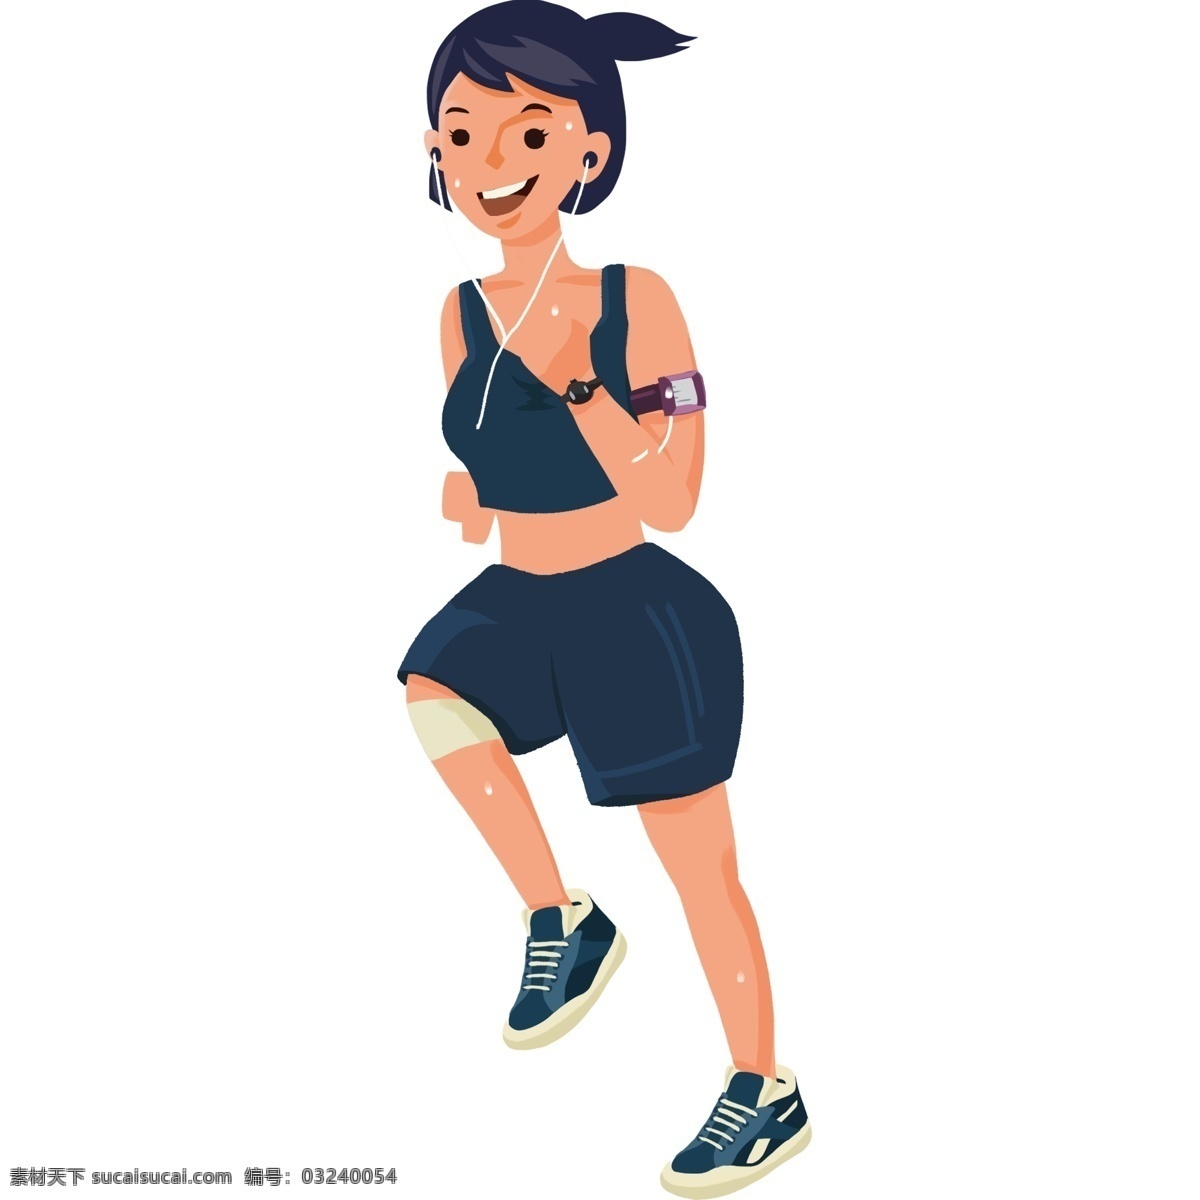 女孩子 跑步 健身 插画 女子 人物 卡通 彩色 水彩 小清新 创意 装饰 图案 手绘风